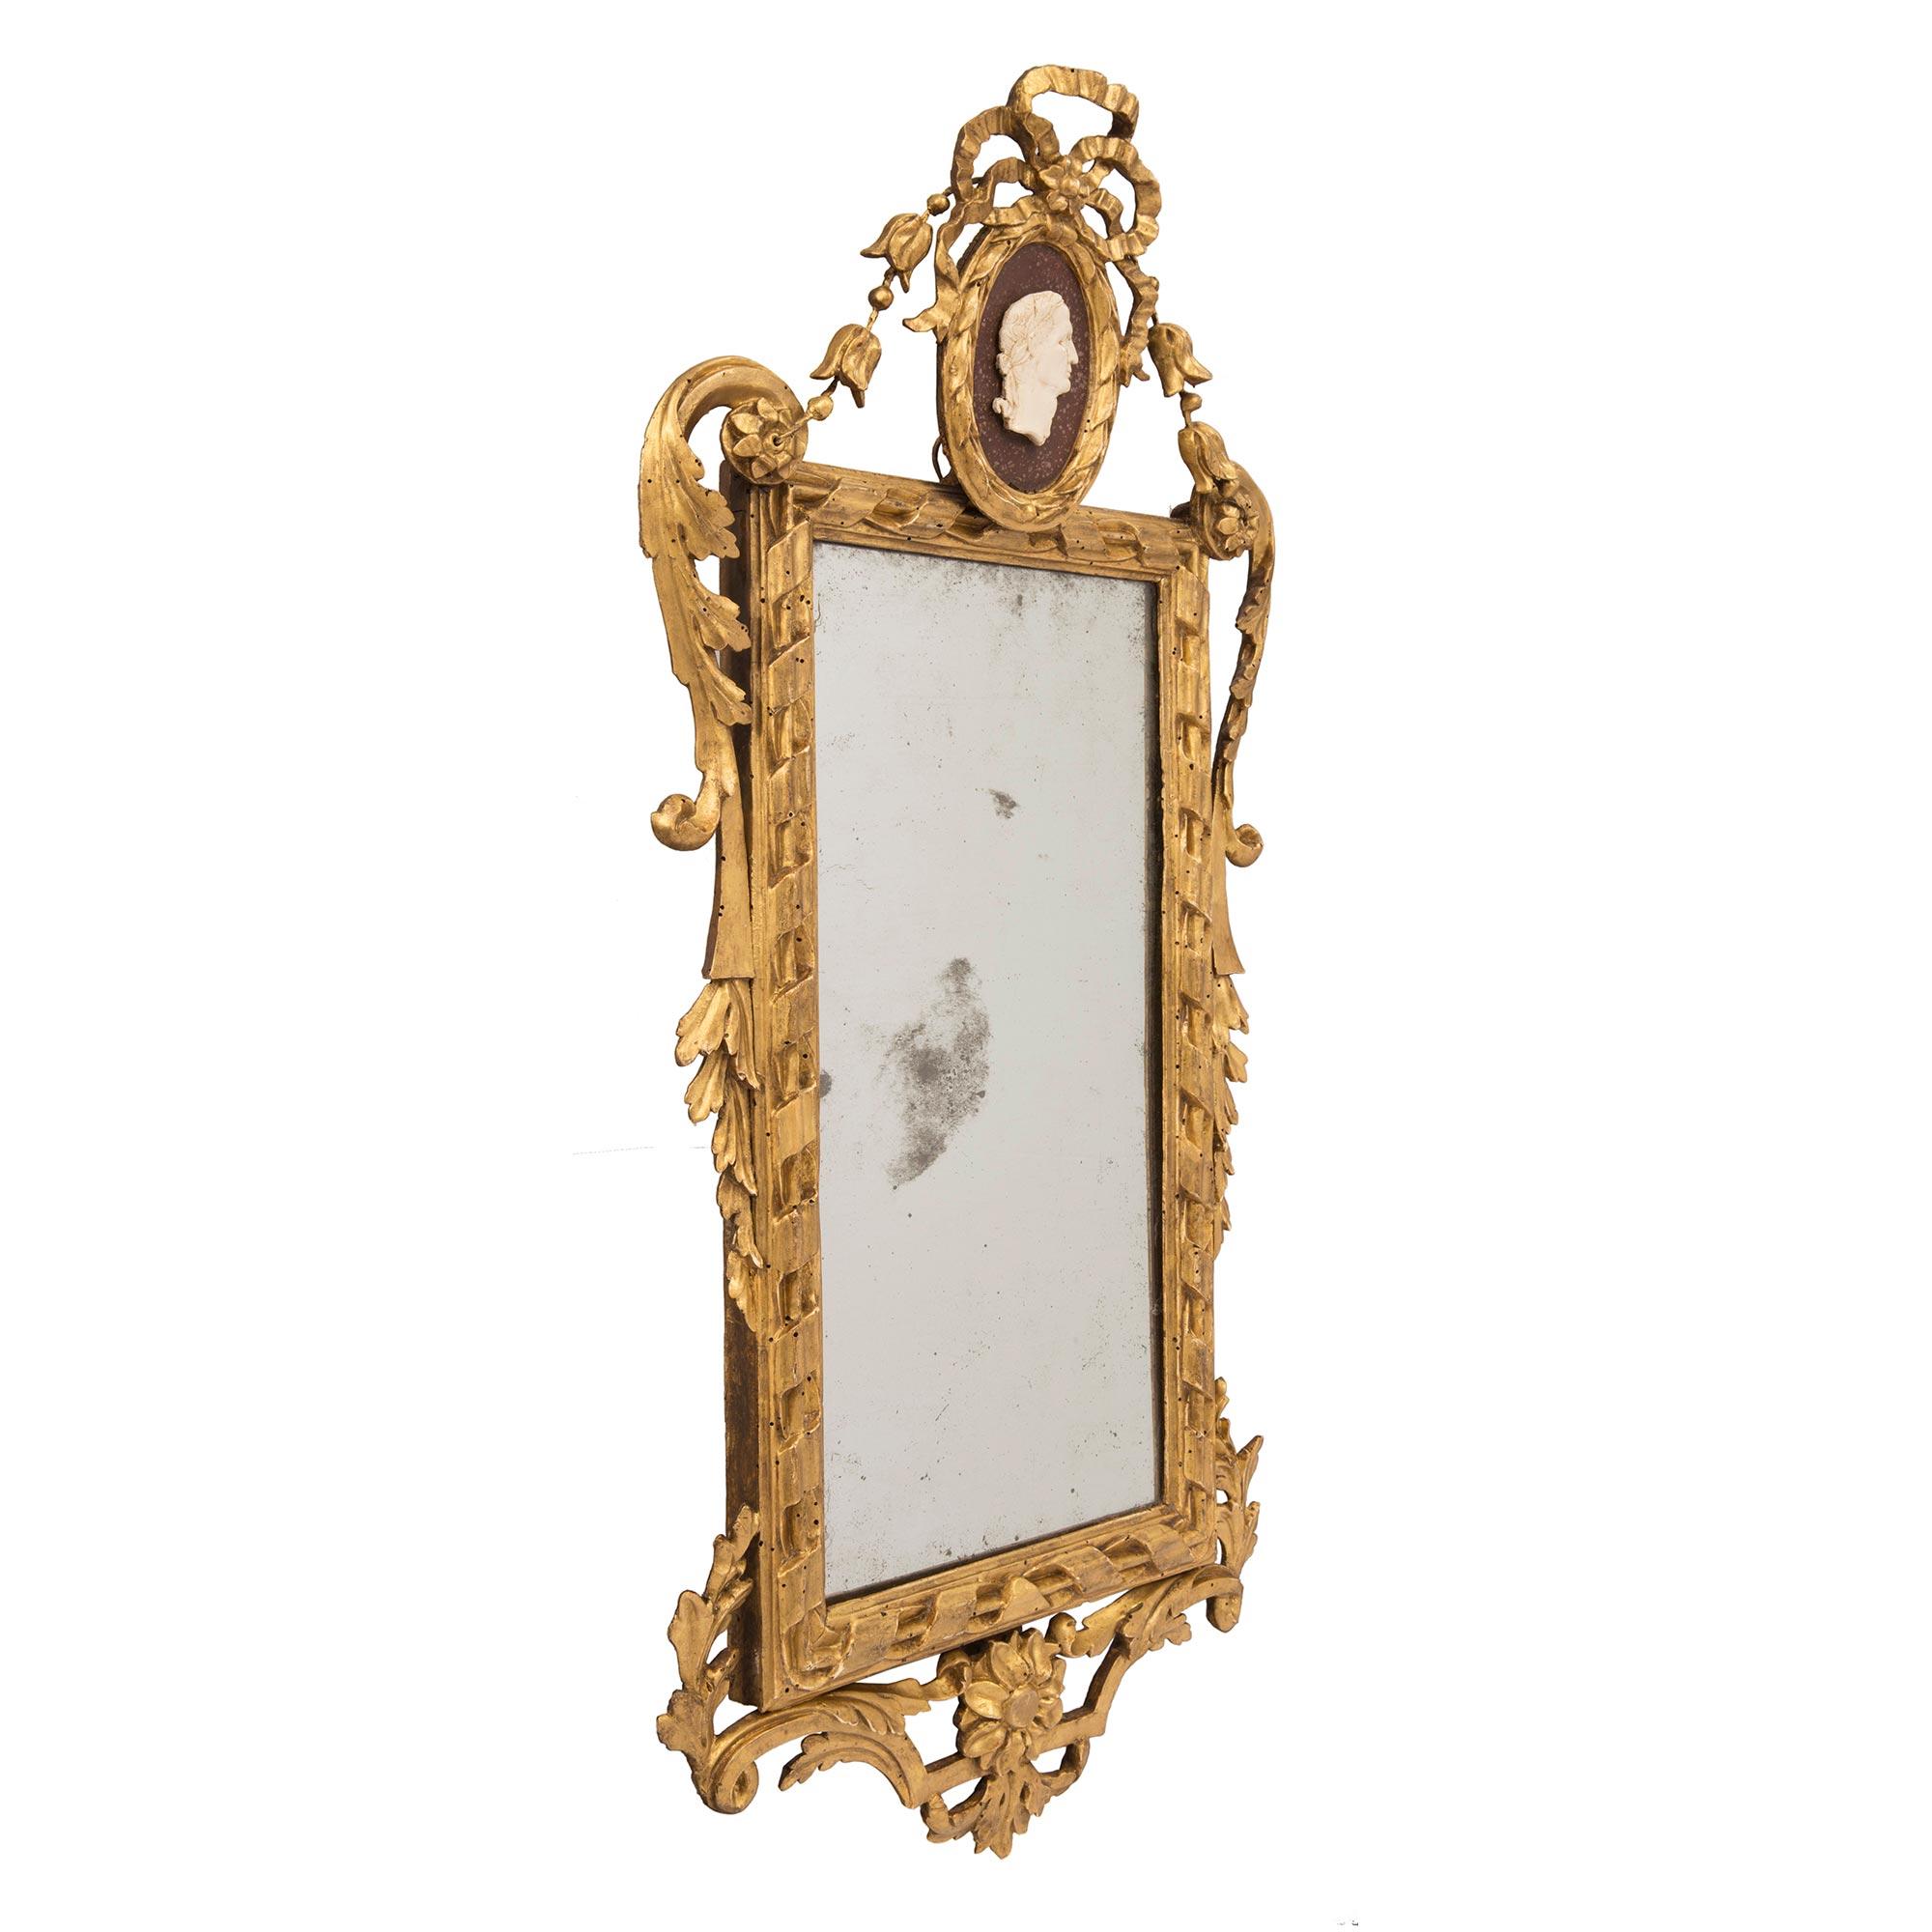 Une paire exceptionnelle de miroirs italiens en bois doré d'époque Louis XVI du 18ème siècle avec des faux peints en porphyre et en marbre blanc de Carrare. Chaque miroir élégant a conservé sa plaque d'origine, encadrée par un motif de corde